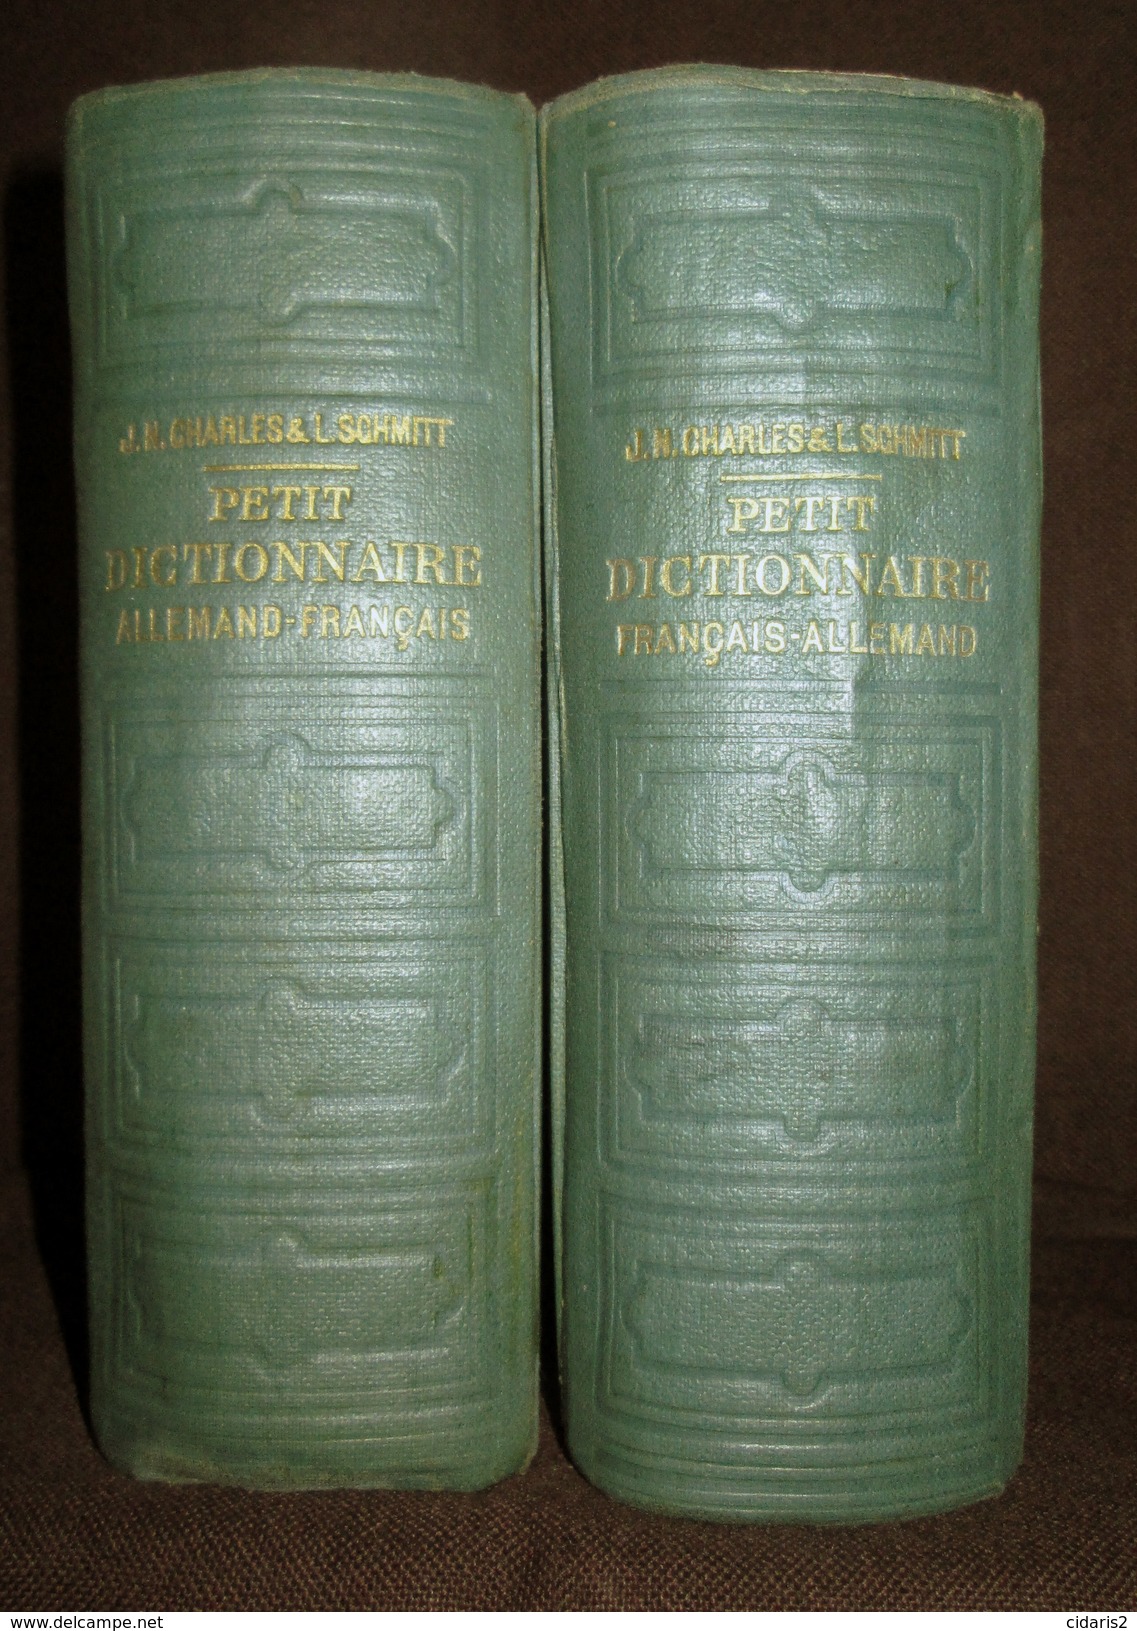 PETIT DICTIONNAIRE FRANCAIS ALLEMAND Franzosisch Deutsch Worterbuch Dictionary CHARLES SCHMITT 2 Volumes 1940 ! - Dizionari